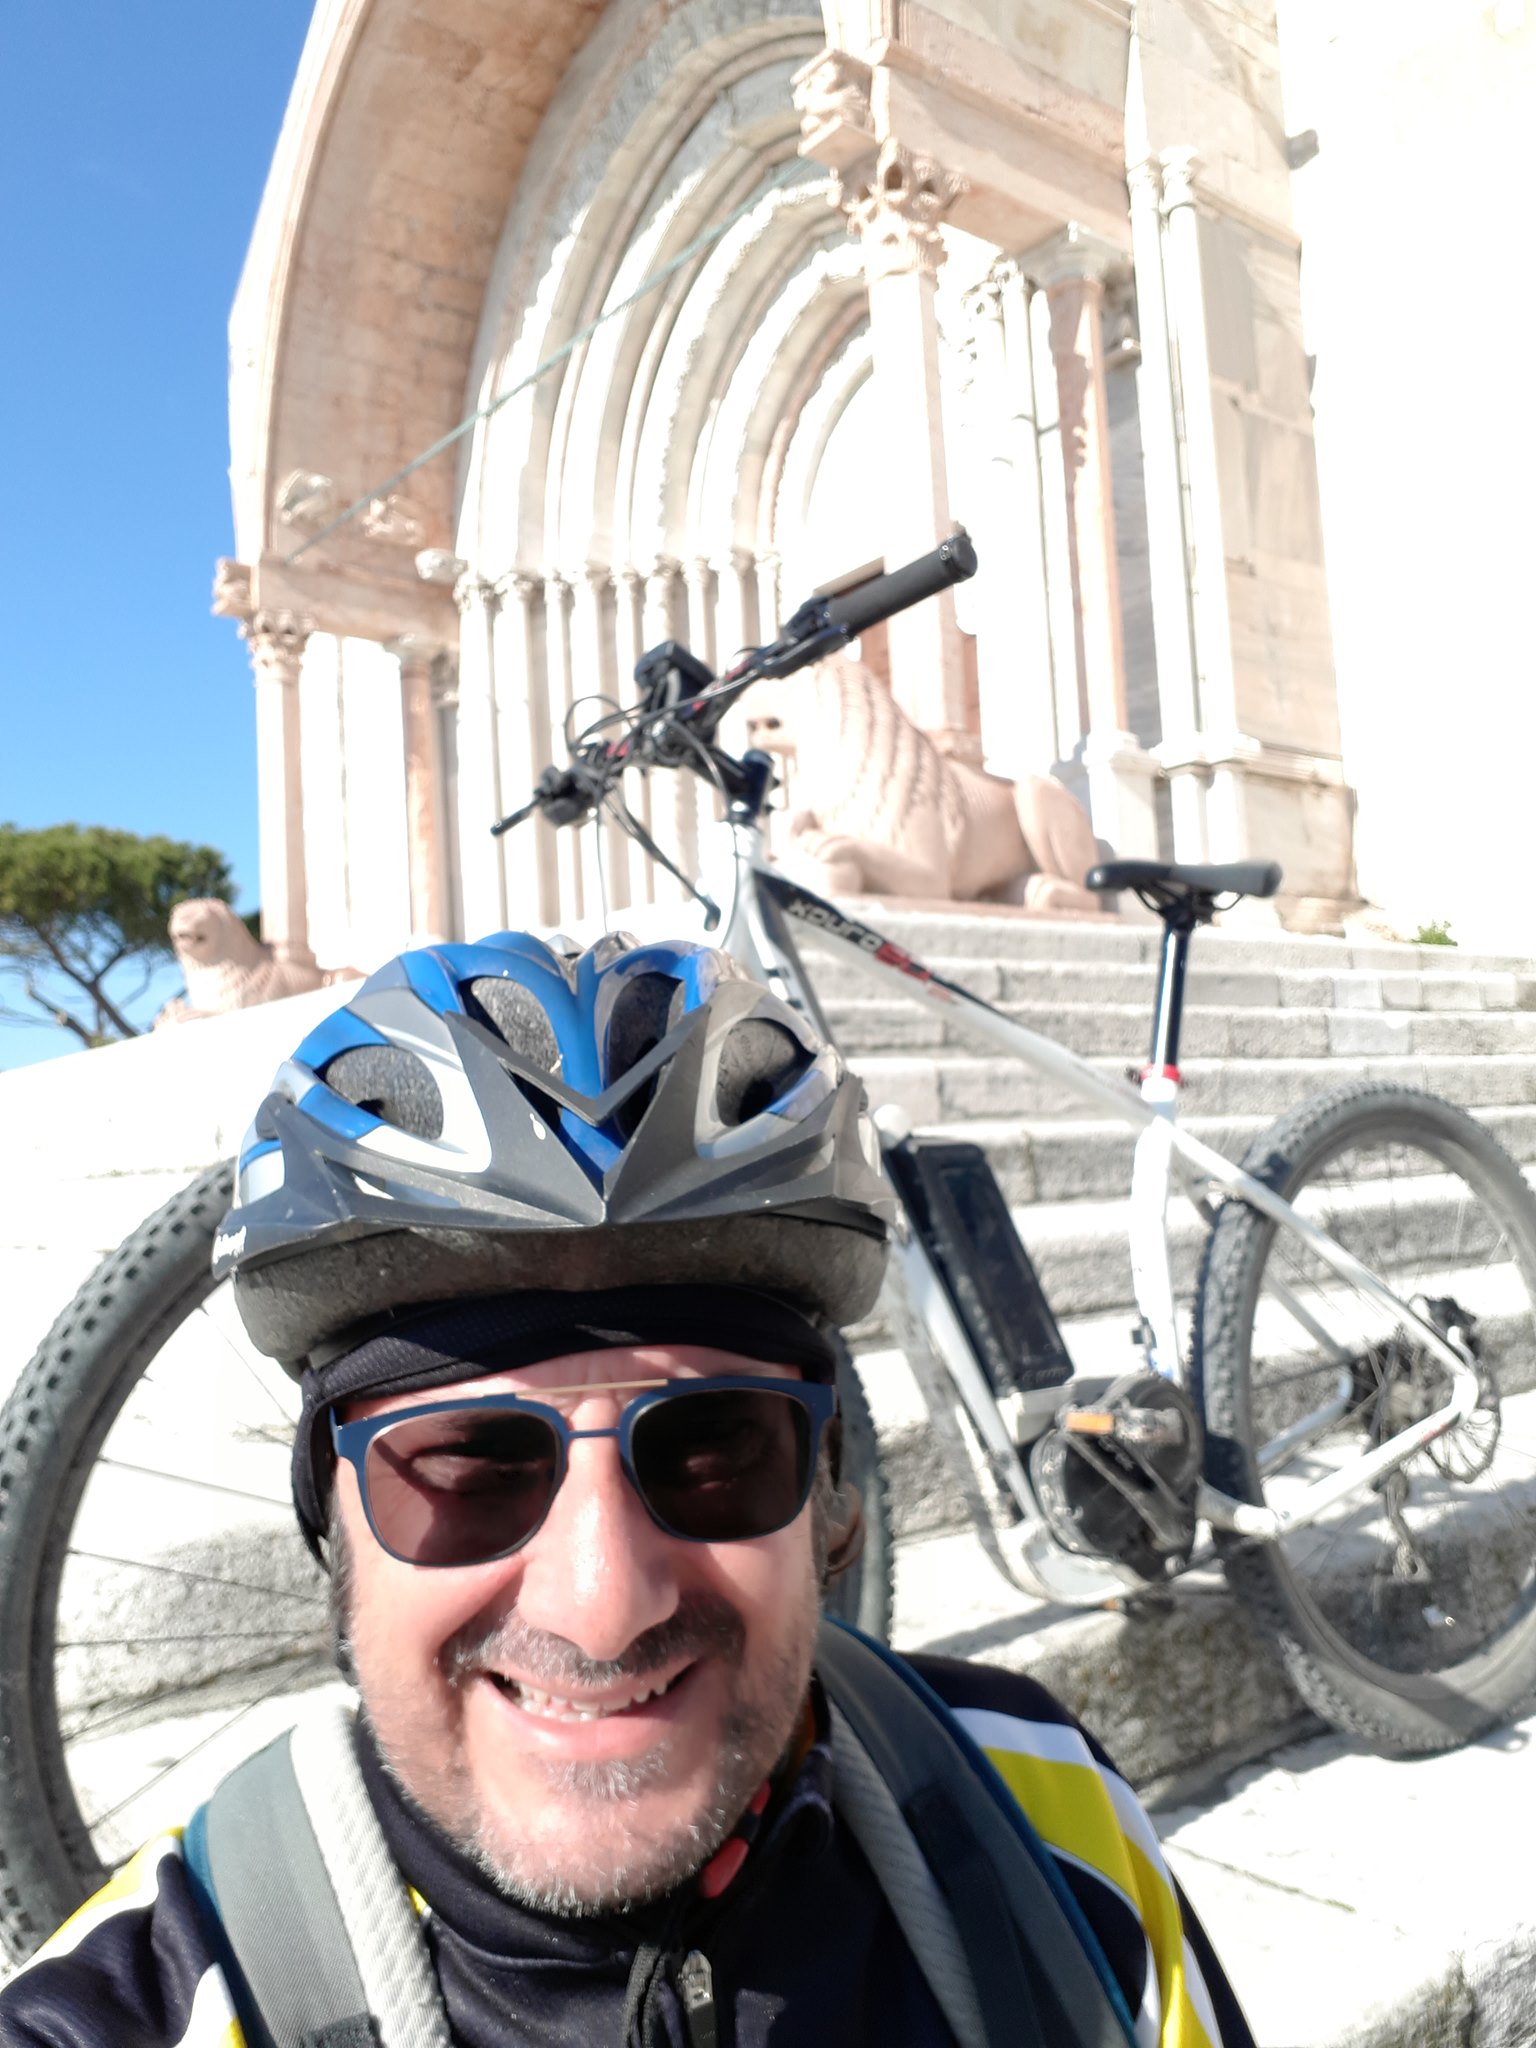 Mare blu bike Conero - Noleggio, vendita e assistenza bici, ebike e pedalata assistita 17